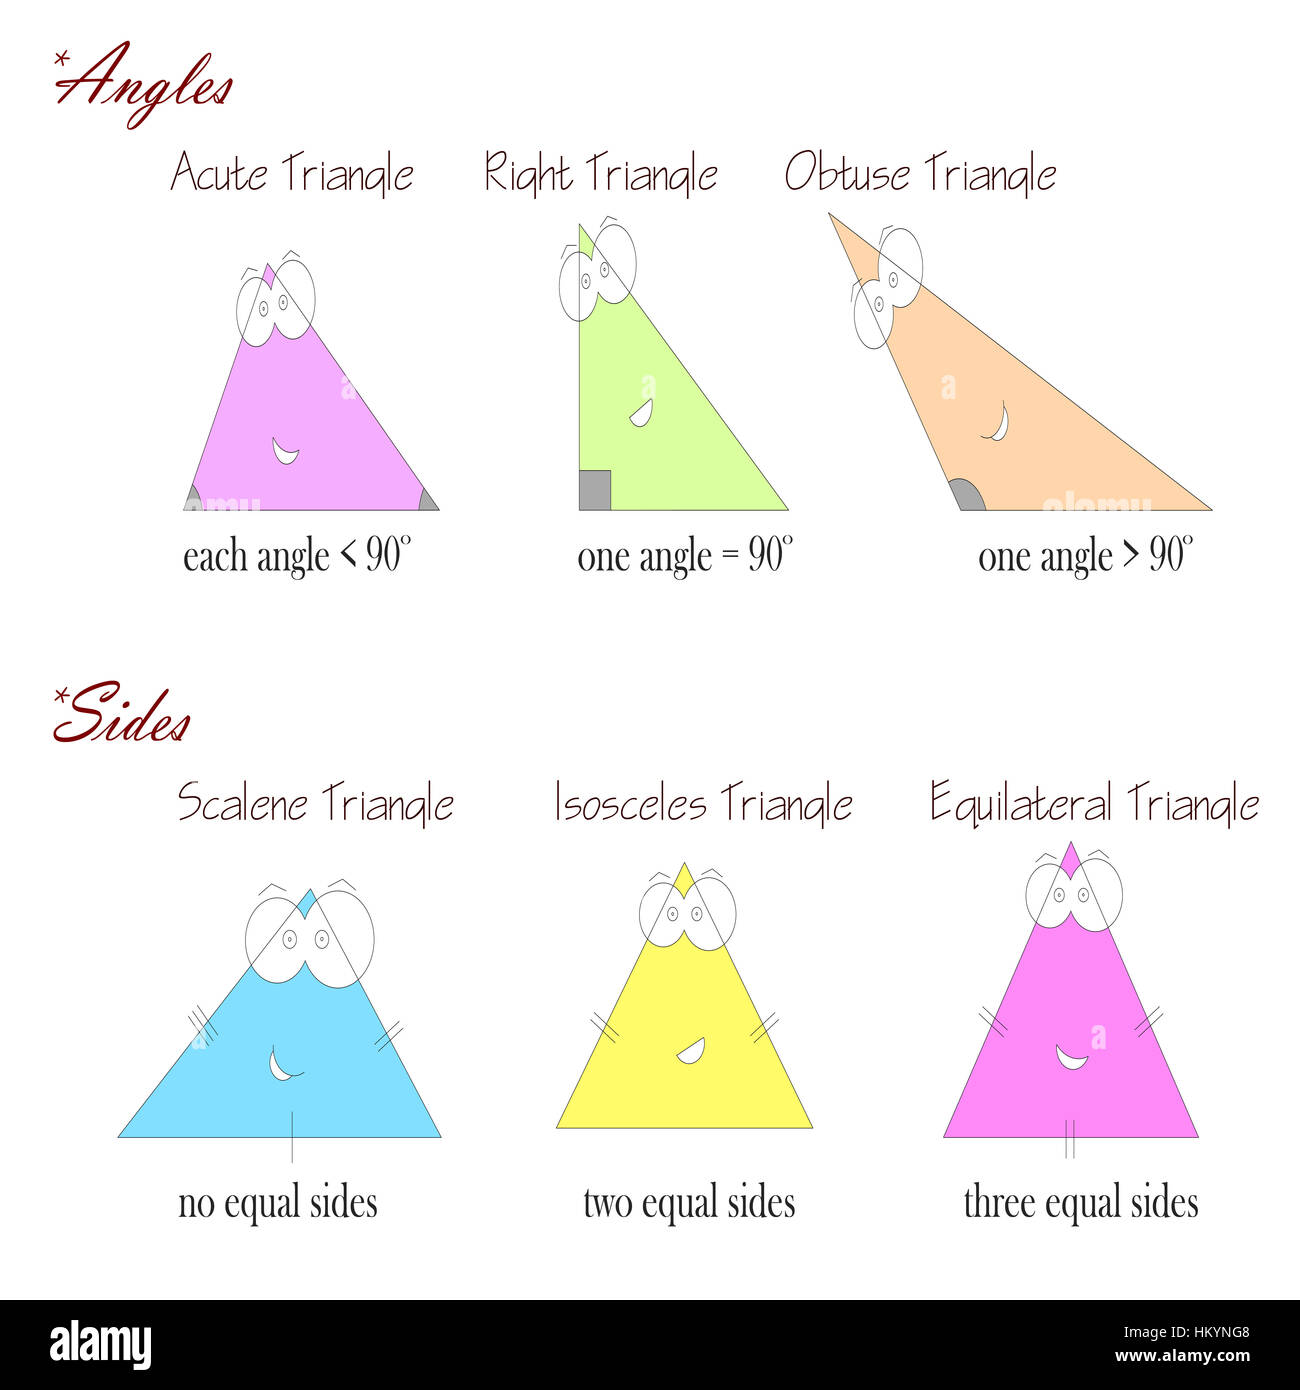 Arten von Dreiecken basierend auf Winkel und Seiten - Geometrie Formen